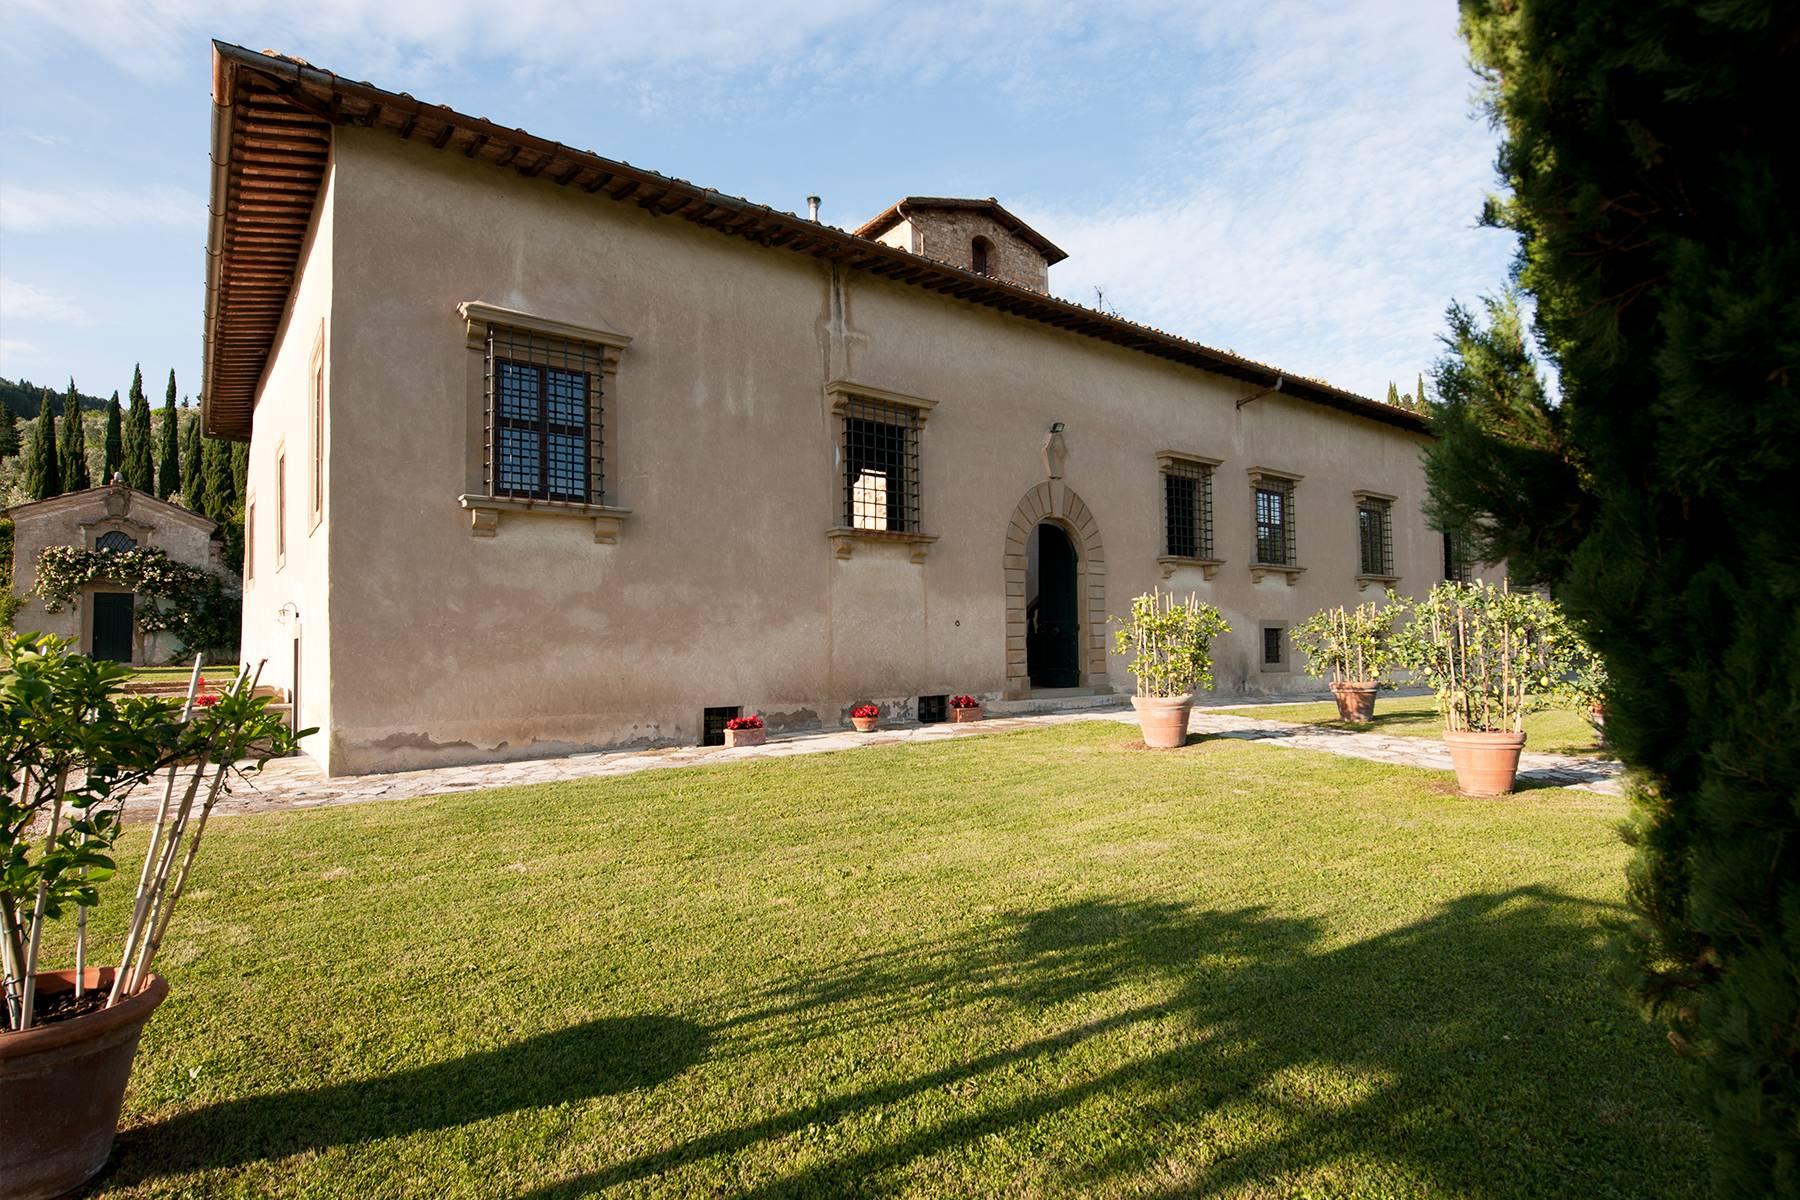 Grande villa padronale d'epoca nella più rinomata zona olearia vicino a Firenze - 28